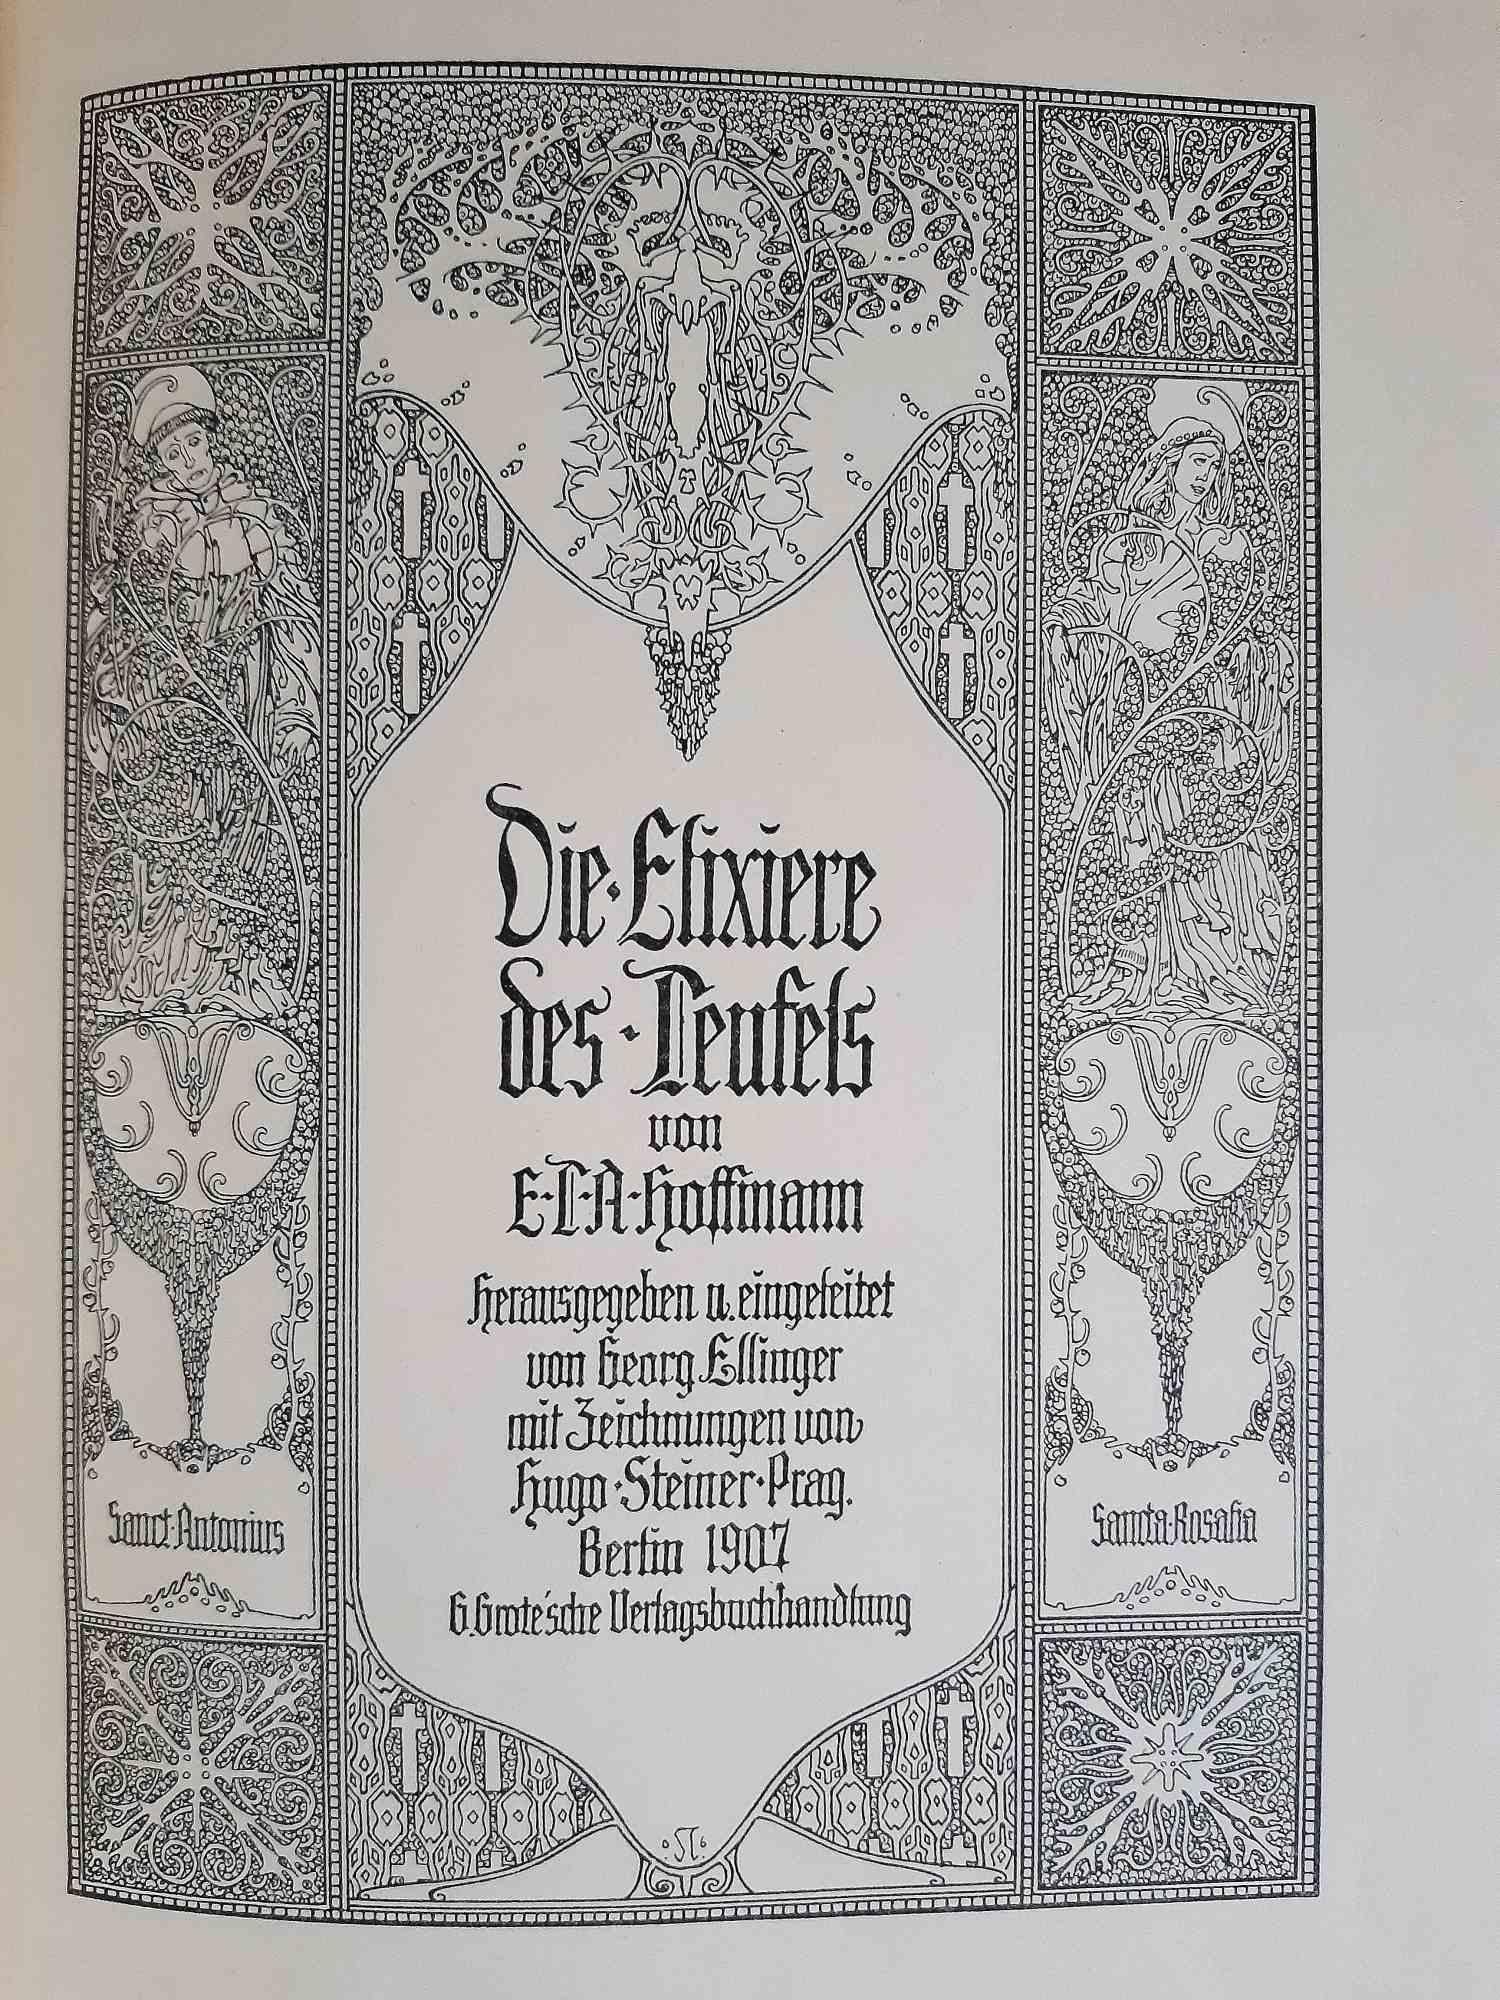 Die Elixiere des Teufels ist ein modernes, seltenes Buch, das von Hoffman E.T.A. (24. Januar 1776 - 25. Juni 1822) geschrieben und 1907 von Hugo Steiner-Prag (Prag, 1880 - New York, 1945) illustriert wurde.

Original-Erstausgabe mit